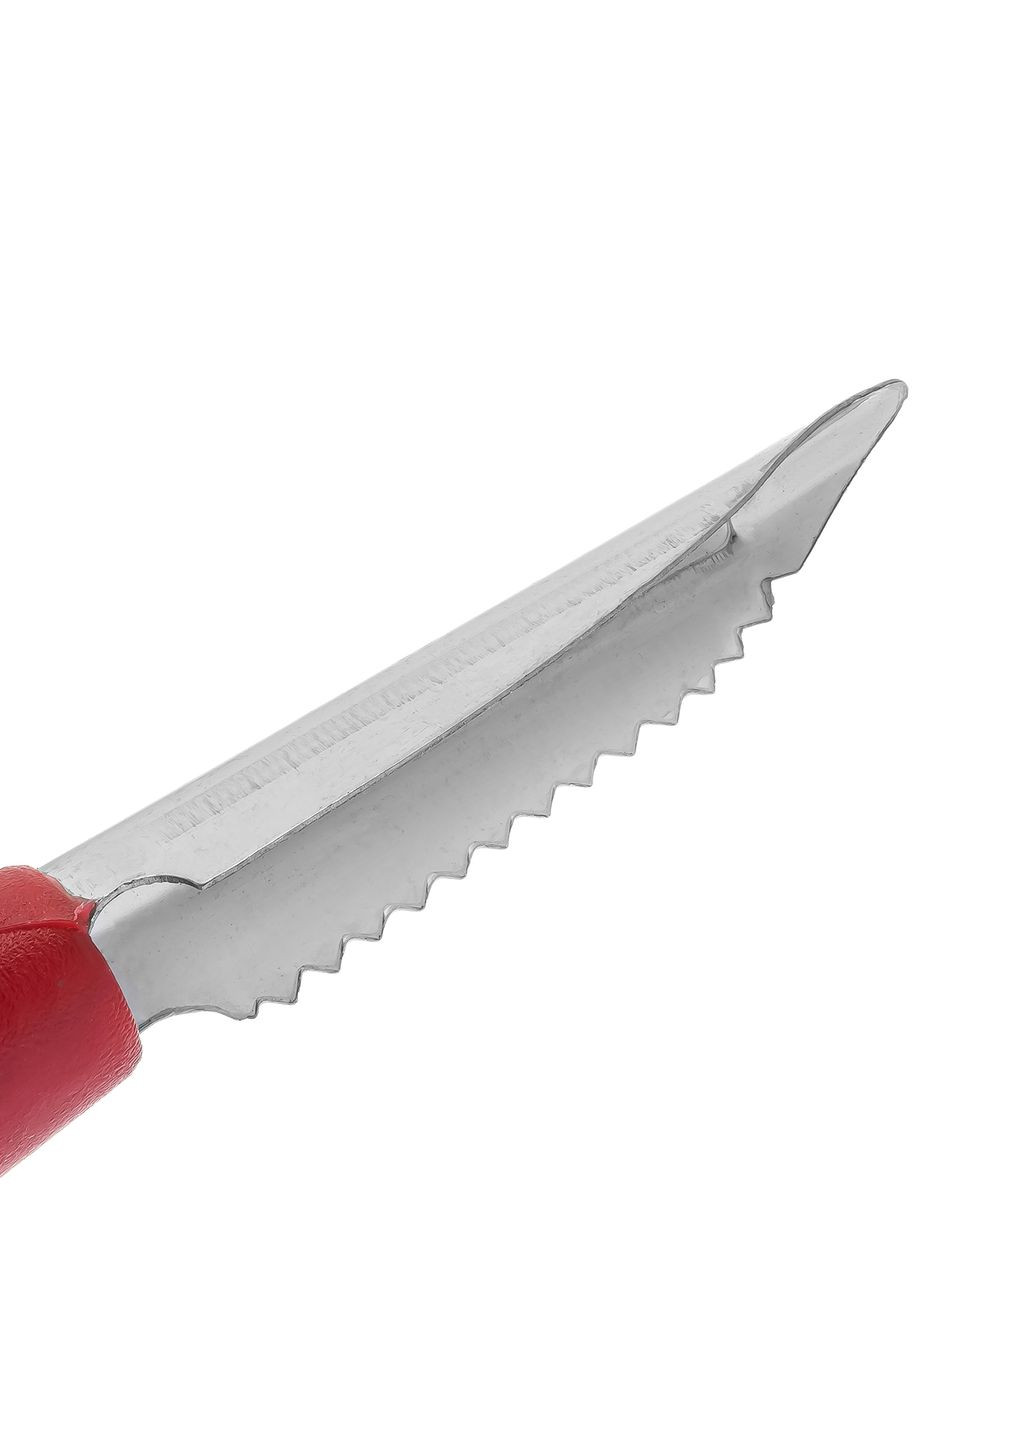 Рыбочистка нож для чистки рыбы и удаления сердцевин с картофеля, яблок, груш и перцев 18 см Kitchette (277962655)